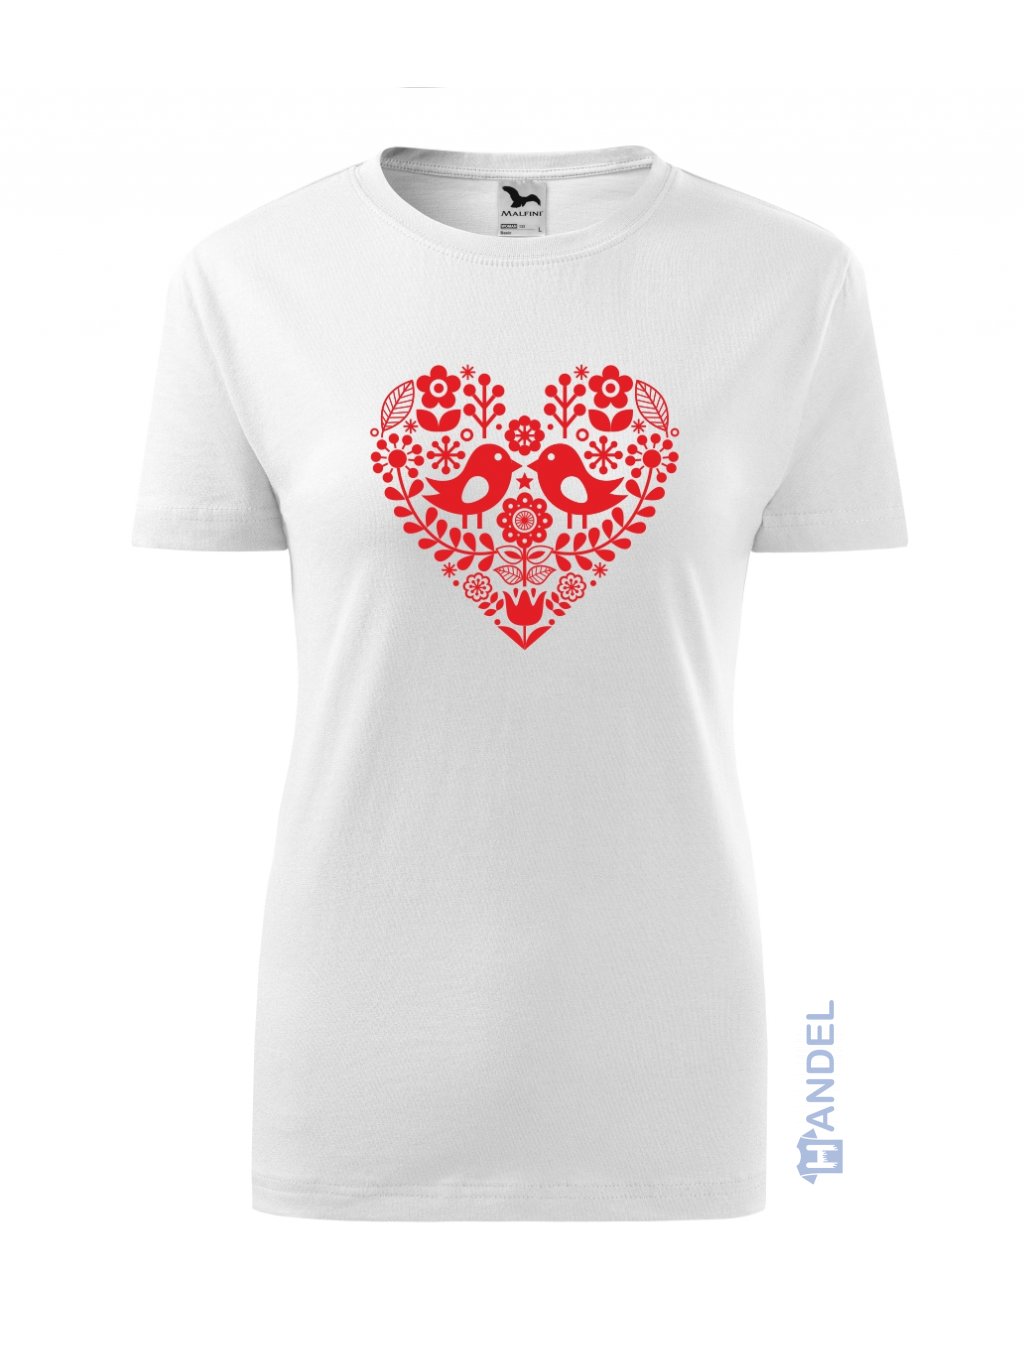 Dámske tričko - Ľudový motív srdce | Handel e-shop